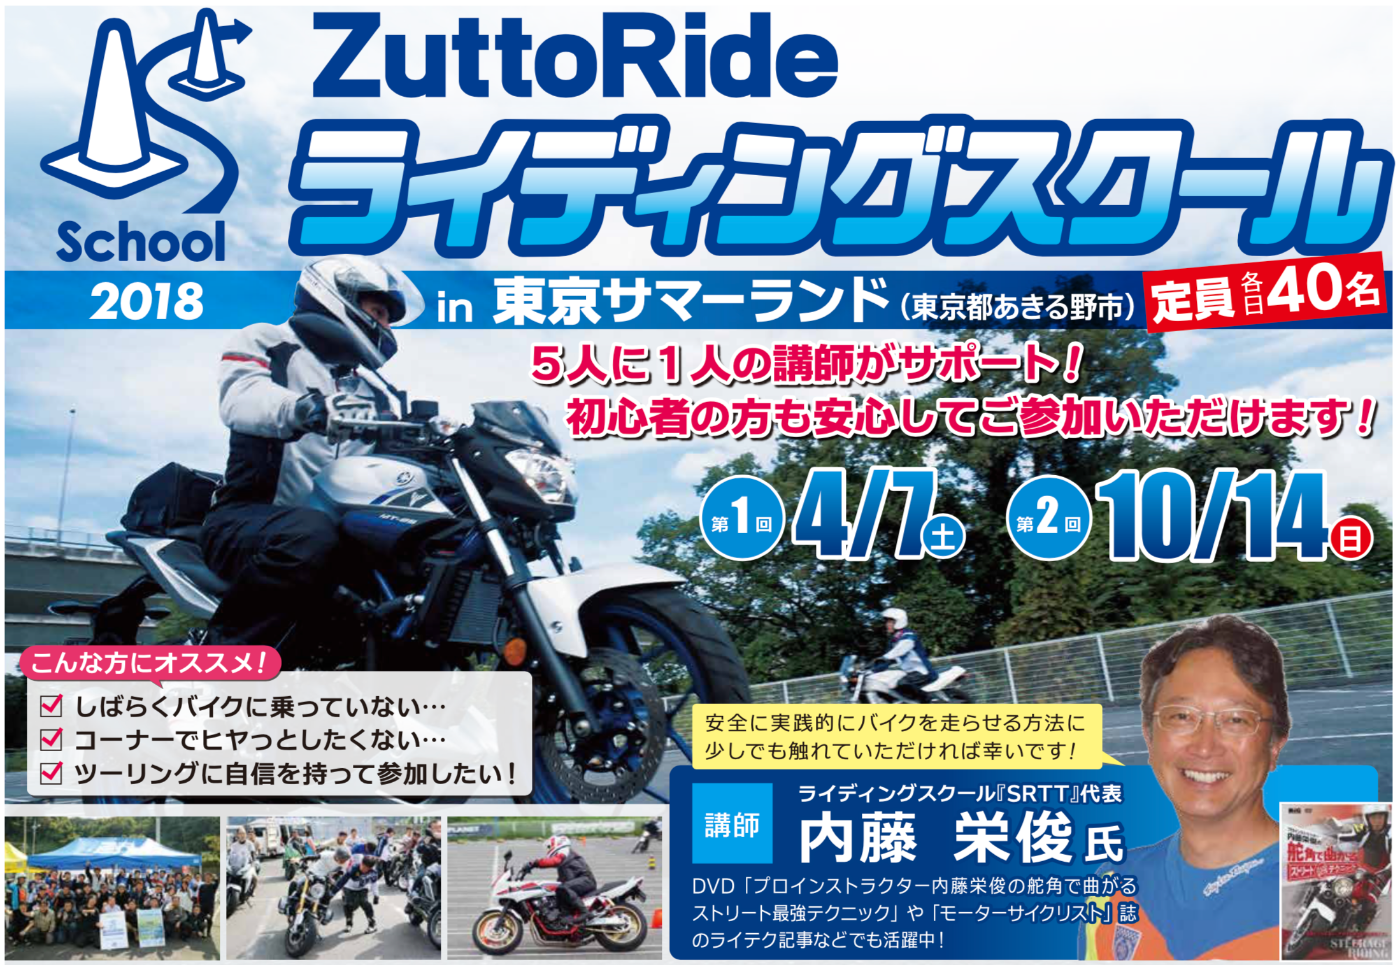 終了しました】【2018年10月14日】ライディングスクール【東京サマーランド】 ライディングスクール ZuttoRide コラム  ZuttoRide Club（ずっとライド クラブ）| バイク盗難保険・ロードサービス